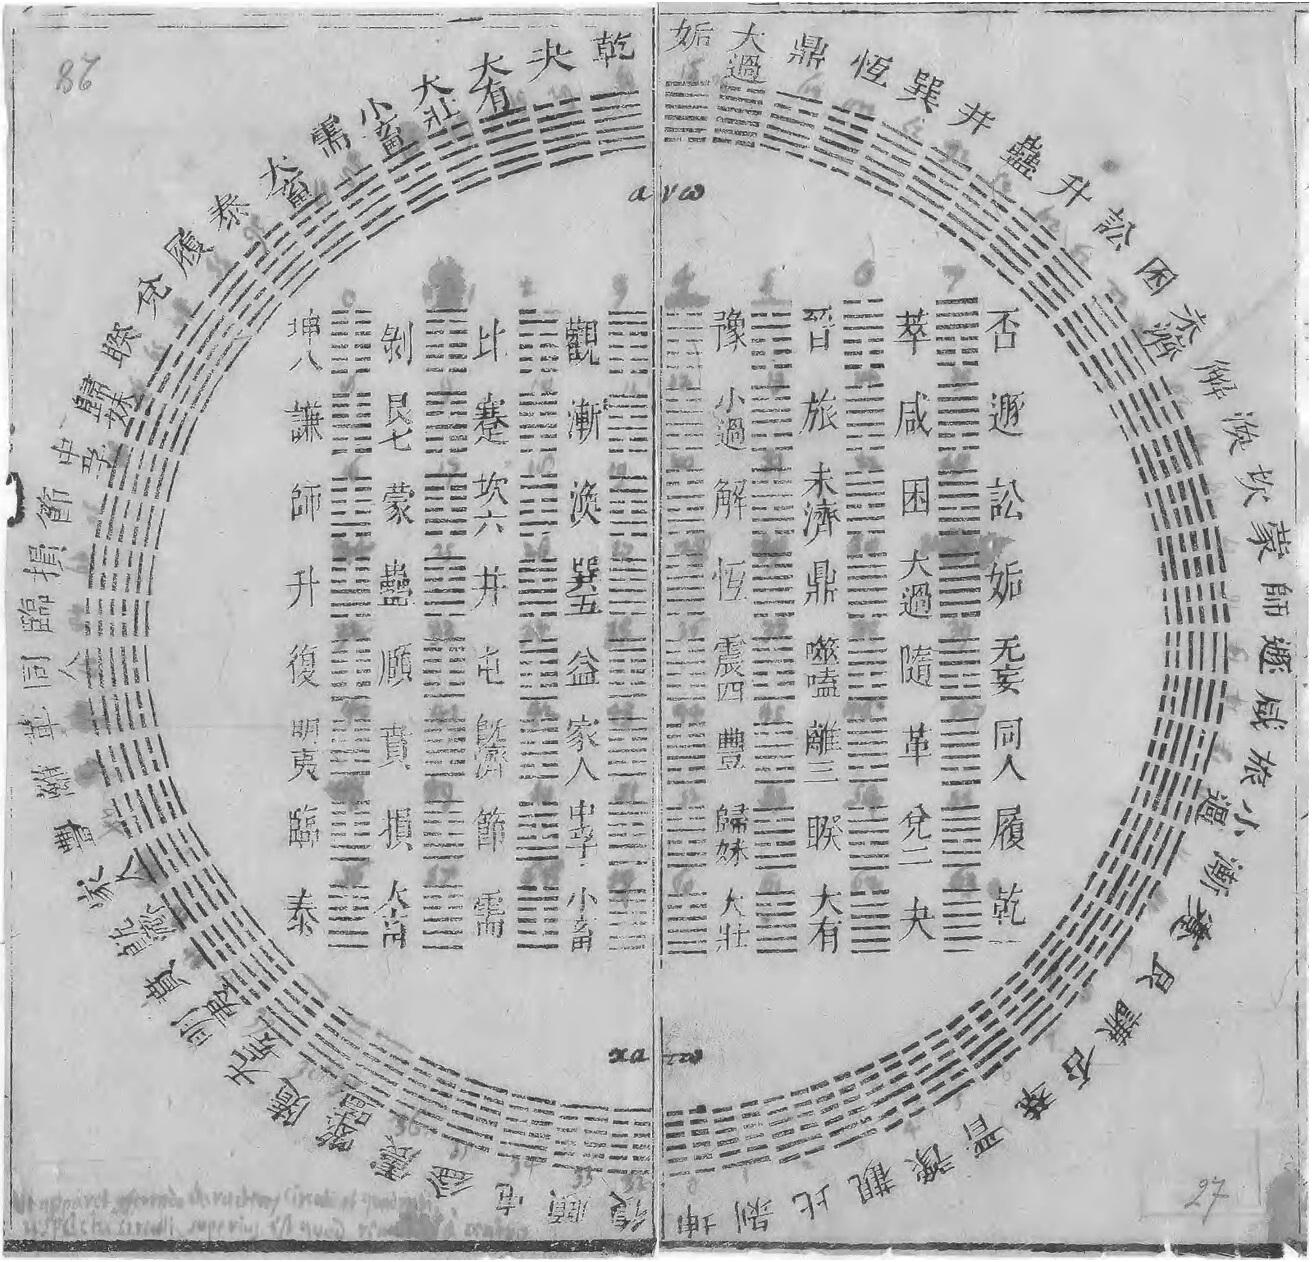 Diagram_of_I_Ching_hexagrams_owned_by_Gottfried_Wilhelm_Leibniz,_1701.jpg